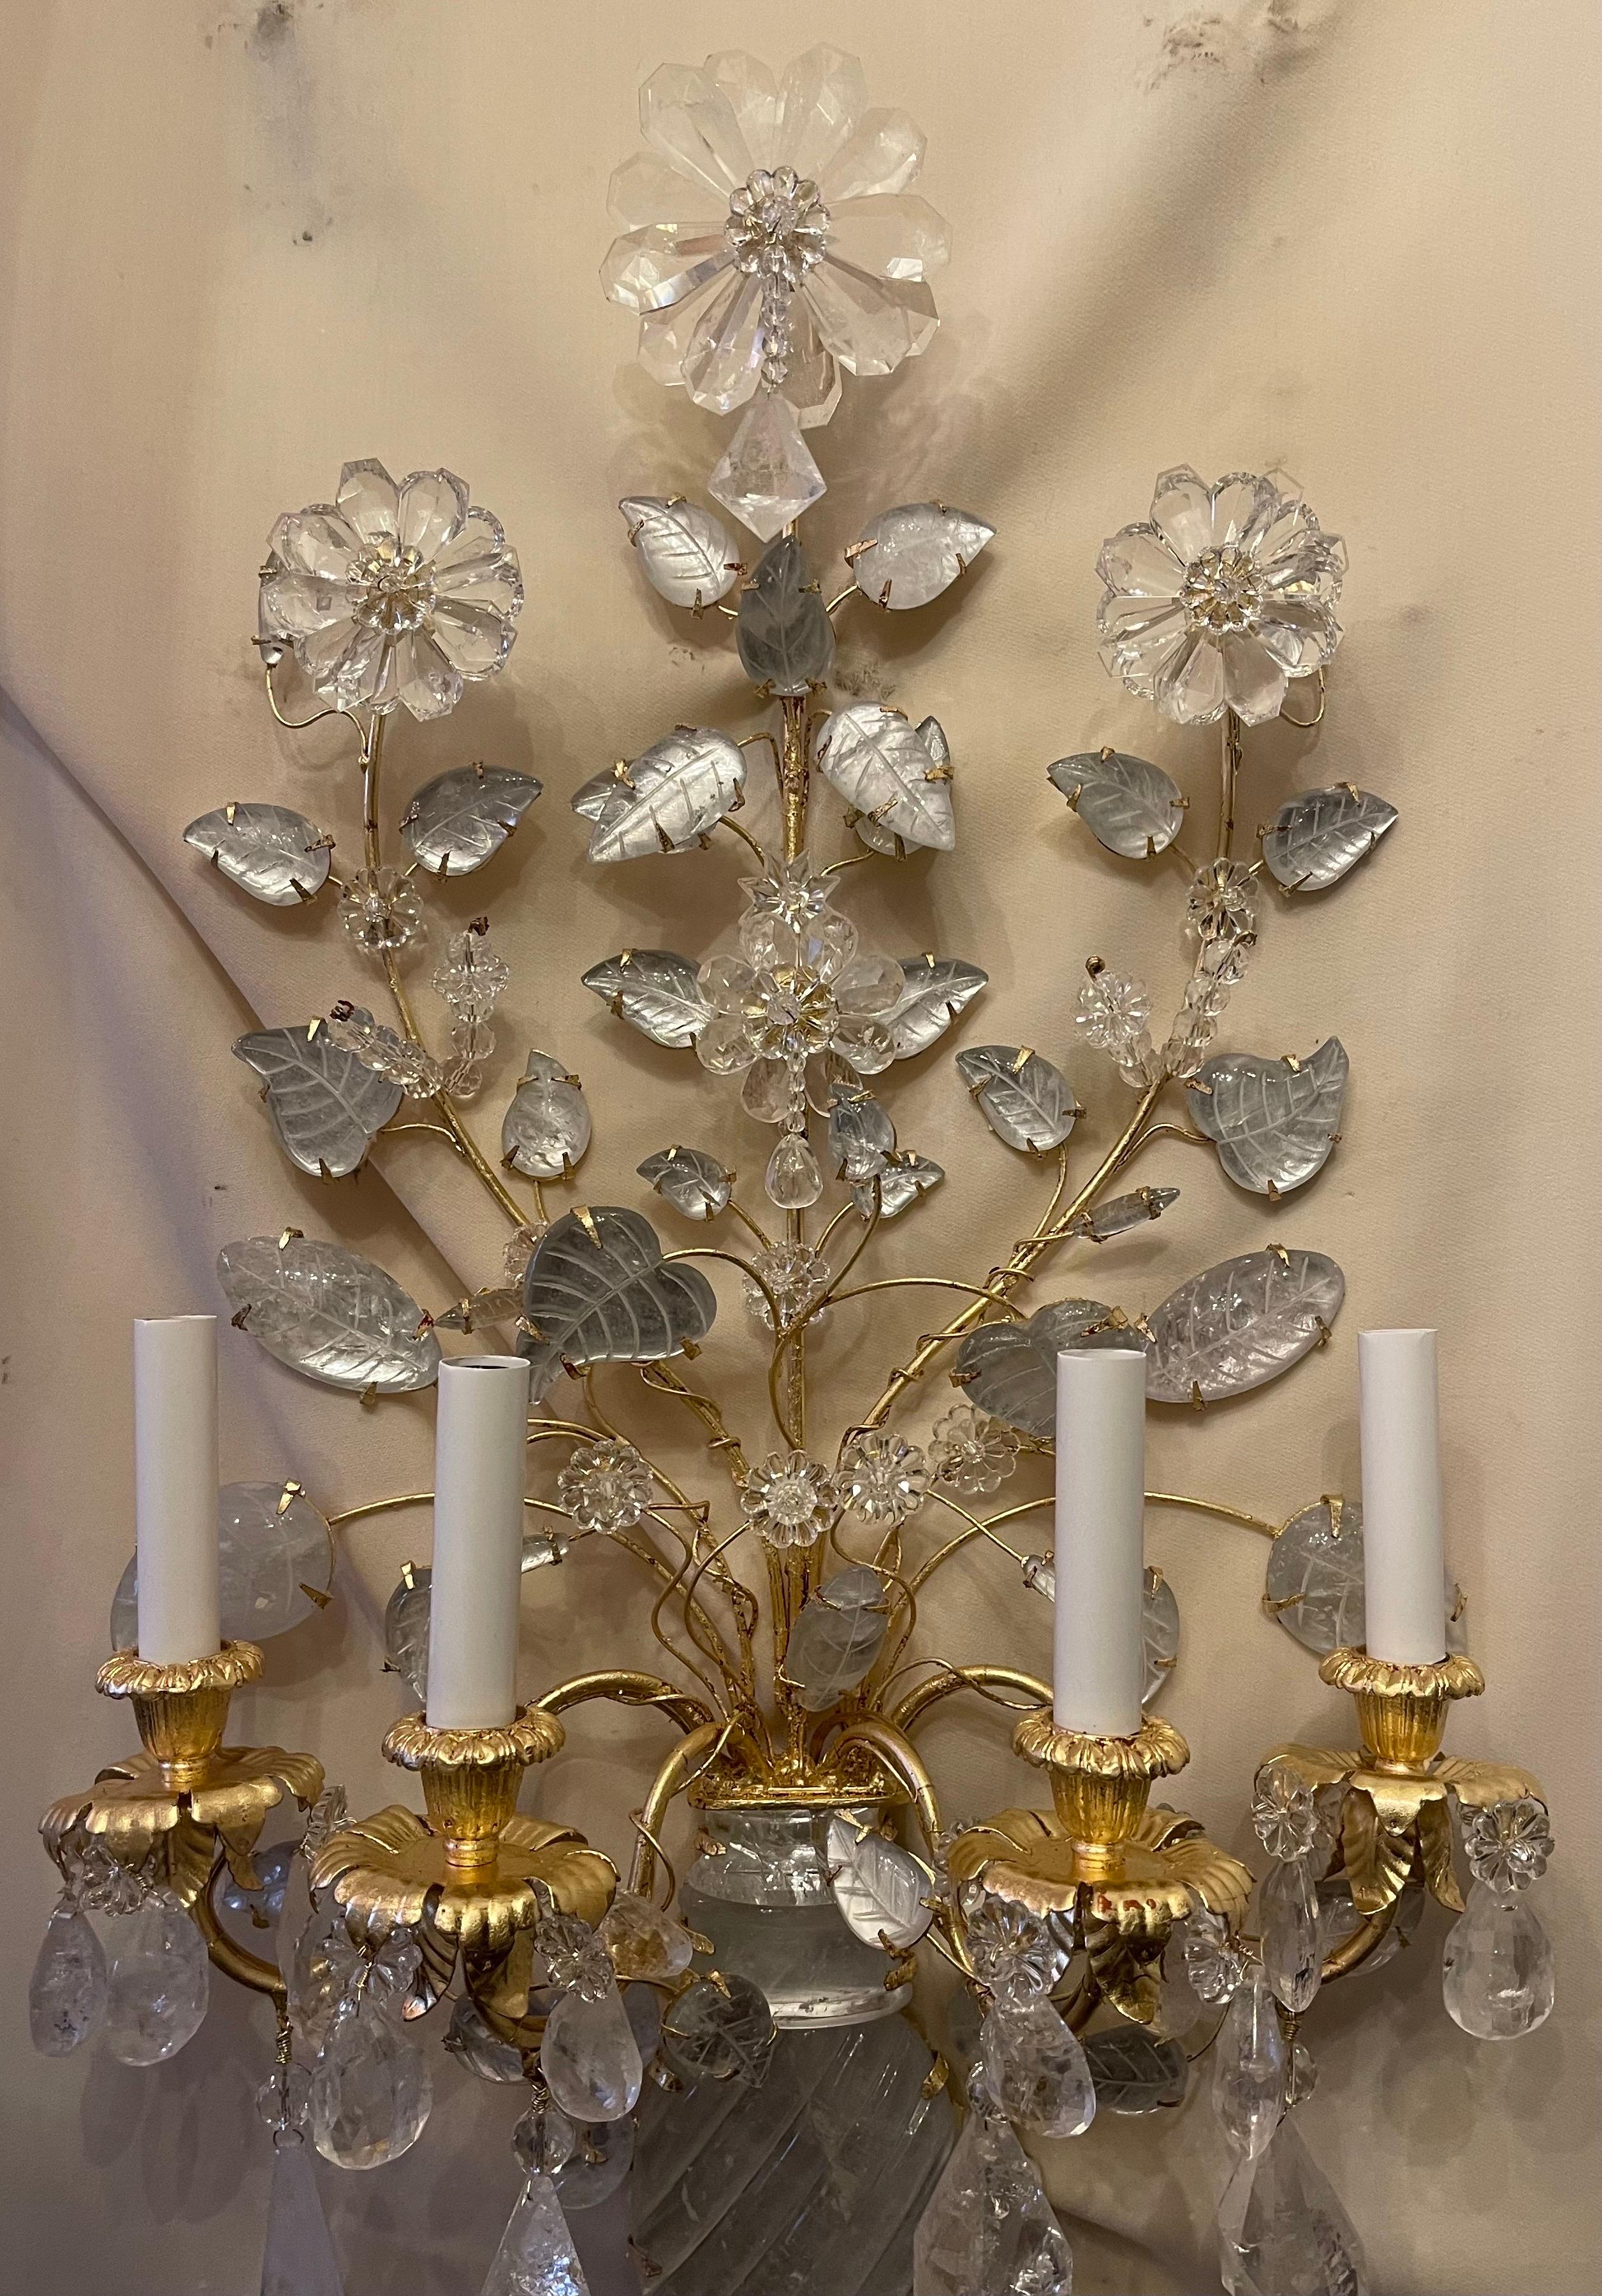 Ein wunderbares Paar von vier Kandelaber Licht Französisch Gold vergoldet und Bergkristall Blume / Urne Form Maison Baguès Stil, sie sind komplett neu verkabelt.

Zwei Paare verfügbar